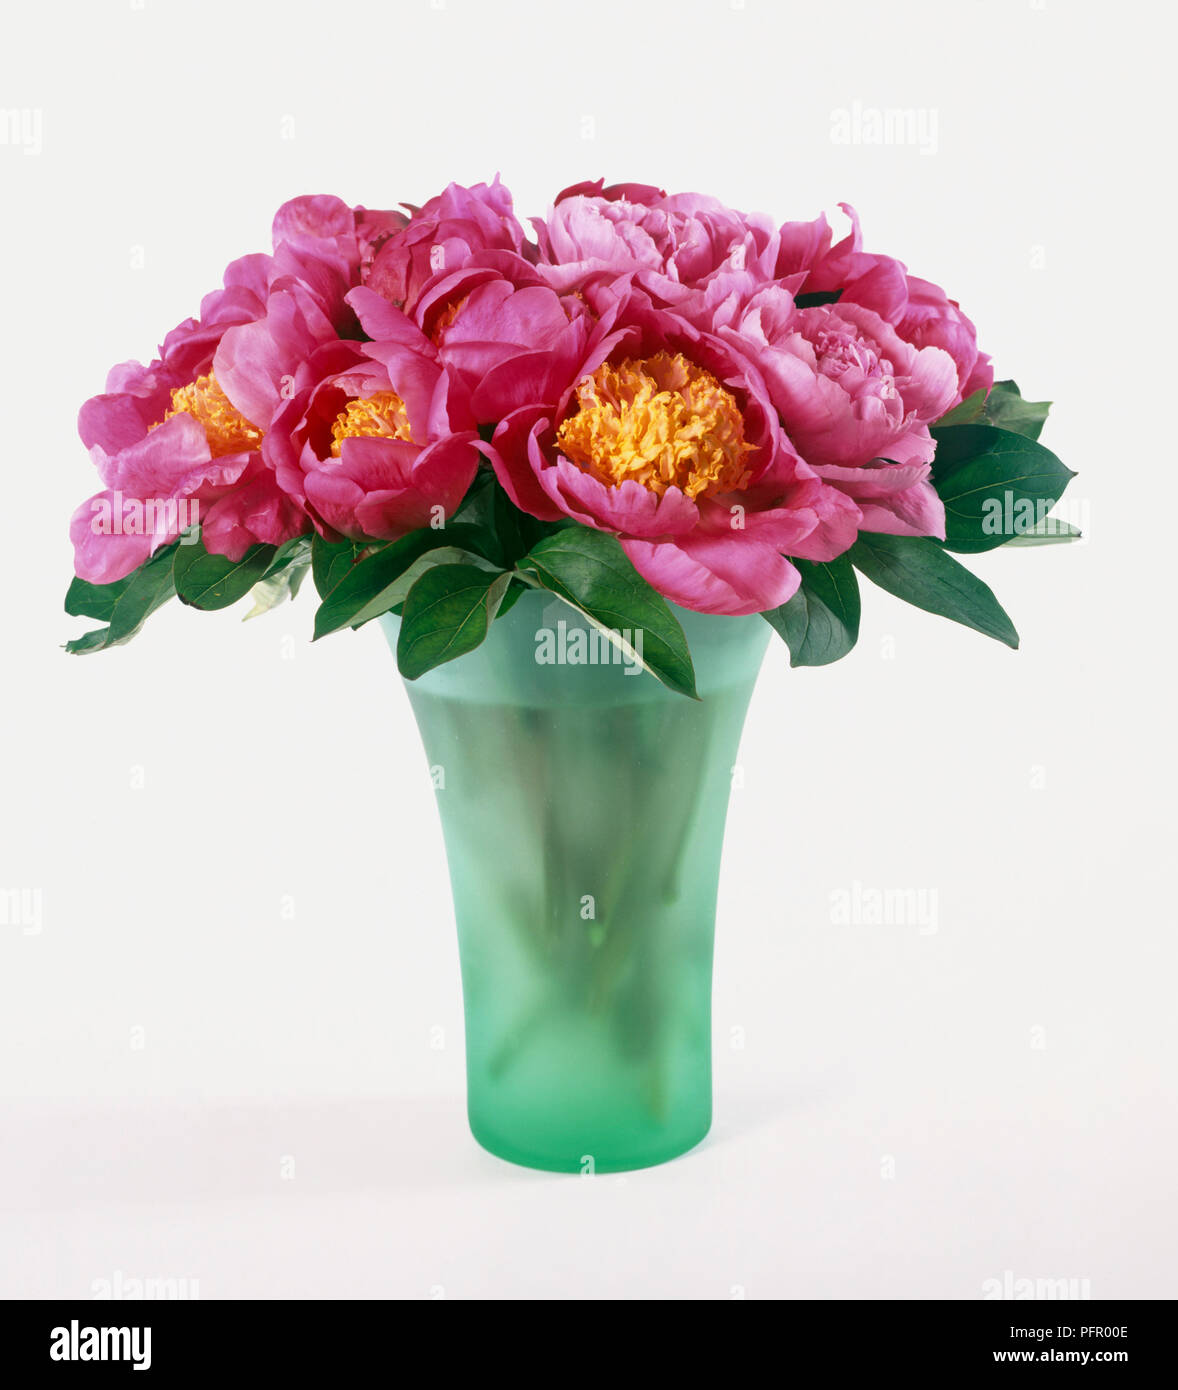 Rose vif et jaune vert opaque pivoines dans un vase en verre Banque D'Images